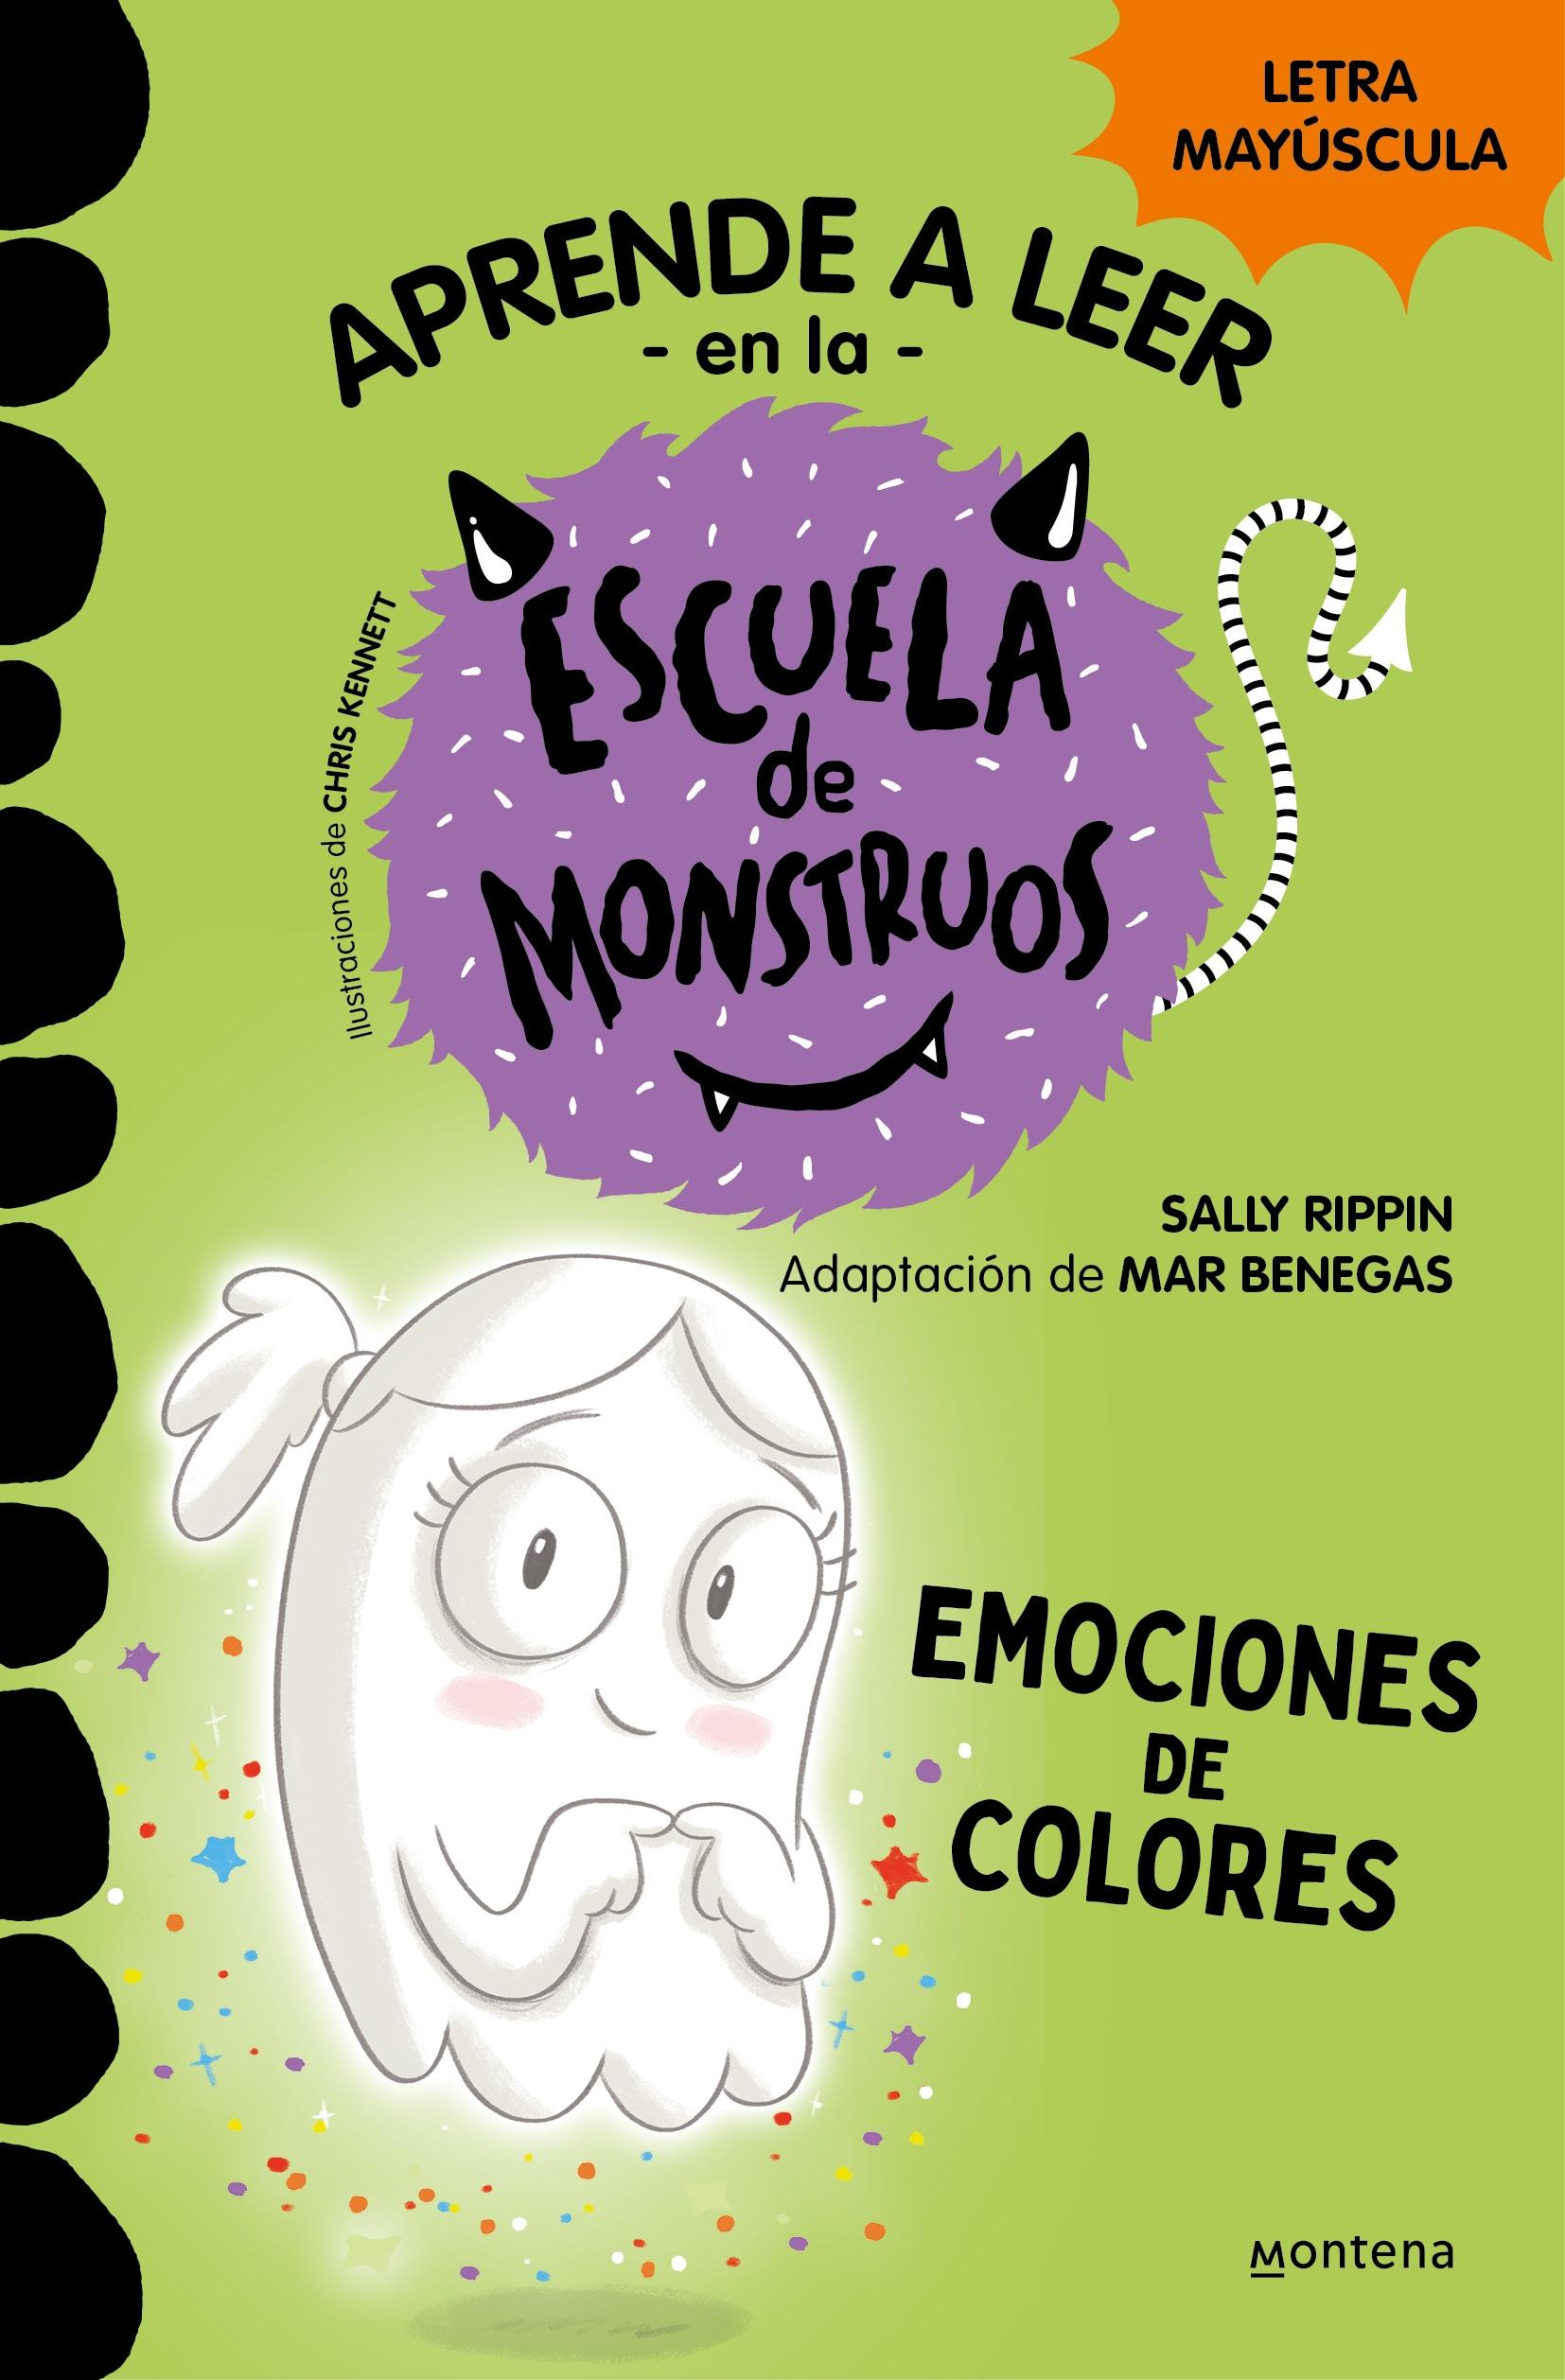 Escuela de Monstruos 8 - Emociones de Colores "Mayúsculas". 